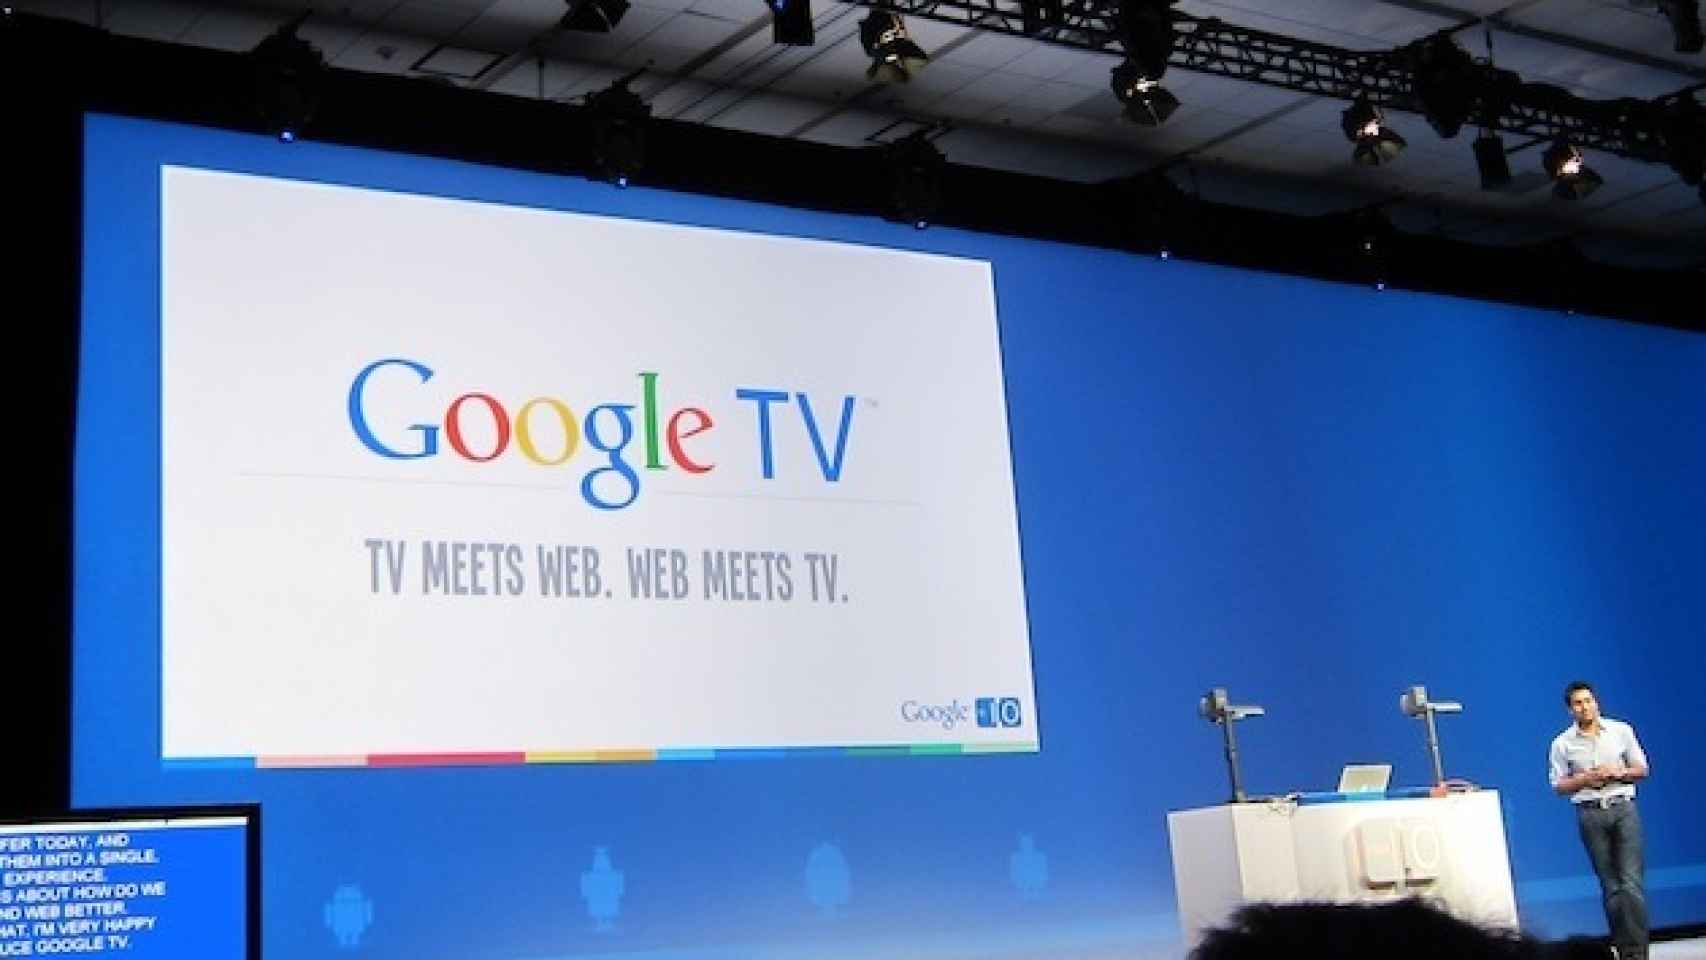 Google TV: Cuando Google intentó llevar la web al televisor